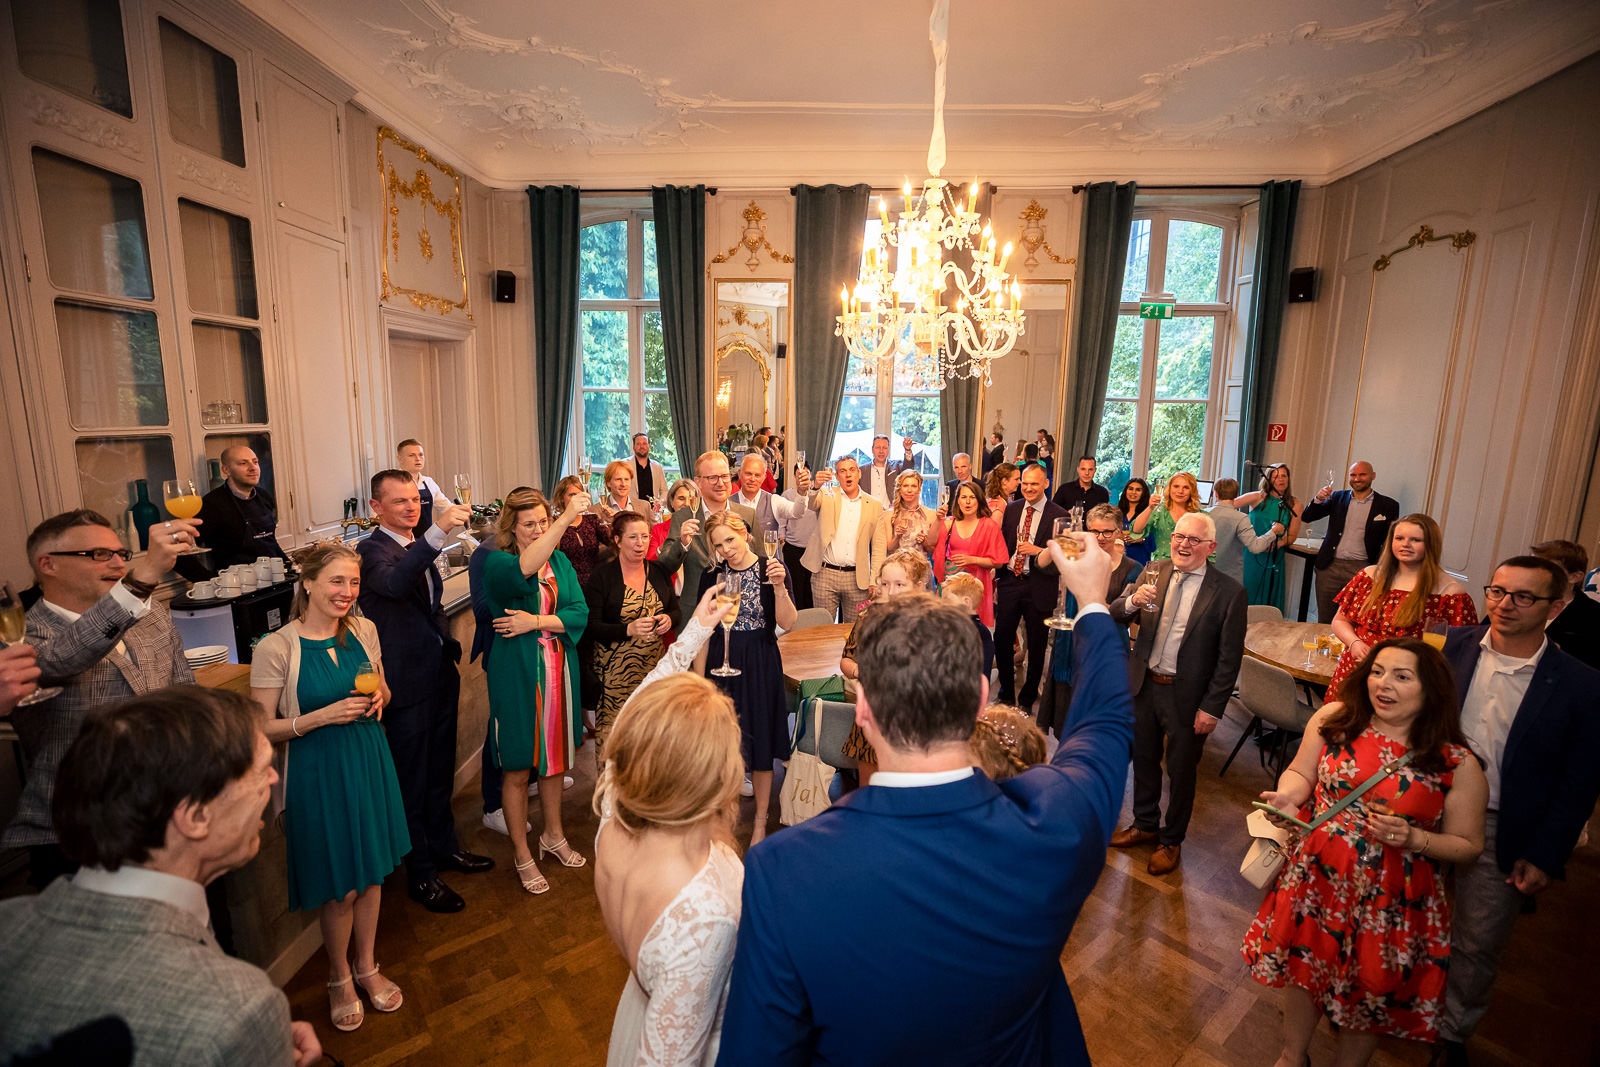 Proost moment bruidspaar en gasten trouwceremonie Spaansche Hof Den Haag